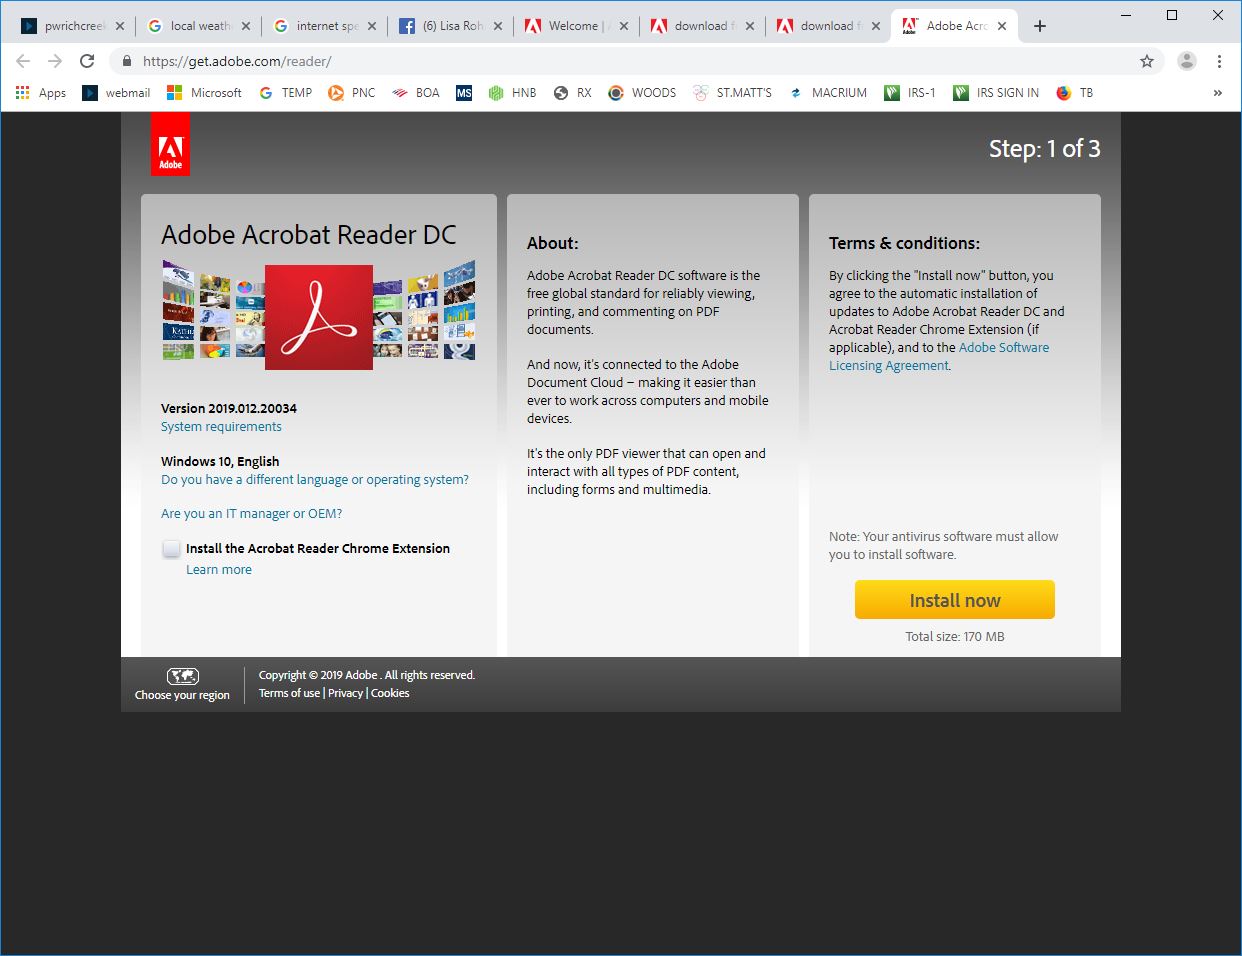 Adobe Acrobat Reader herunterladen: Kostenloser PDF-Viewer